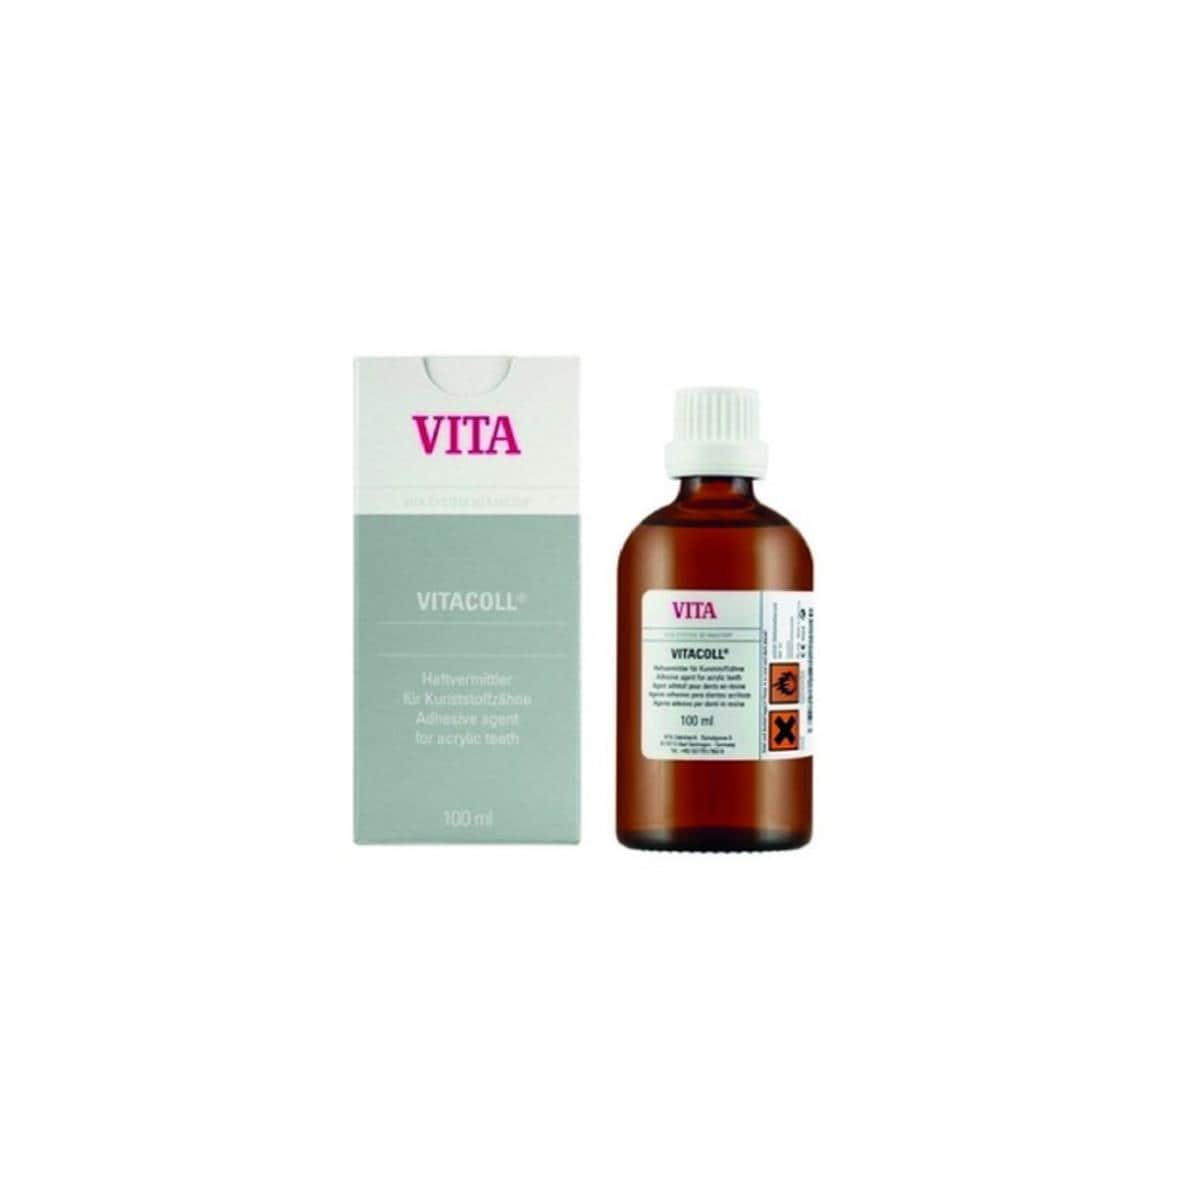 Vitacoll VITA - Le flacon de 100 ml